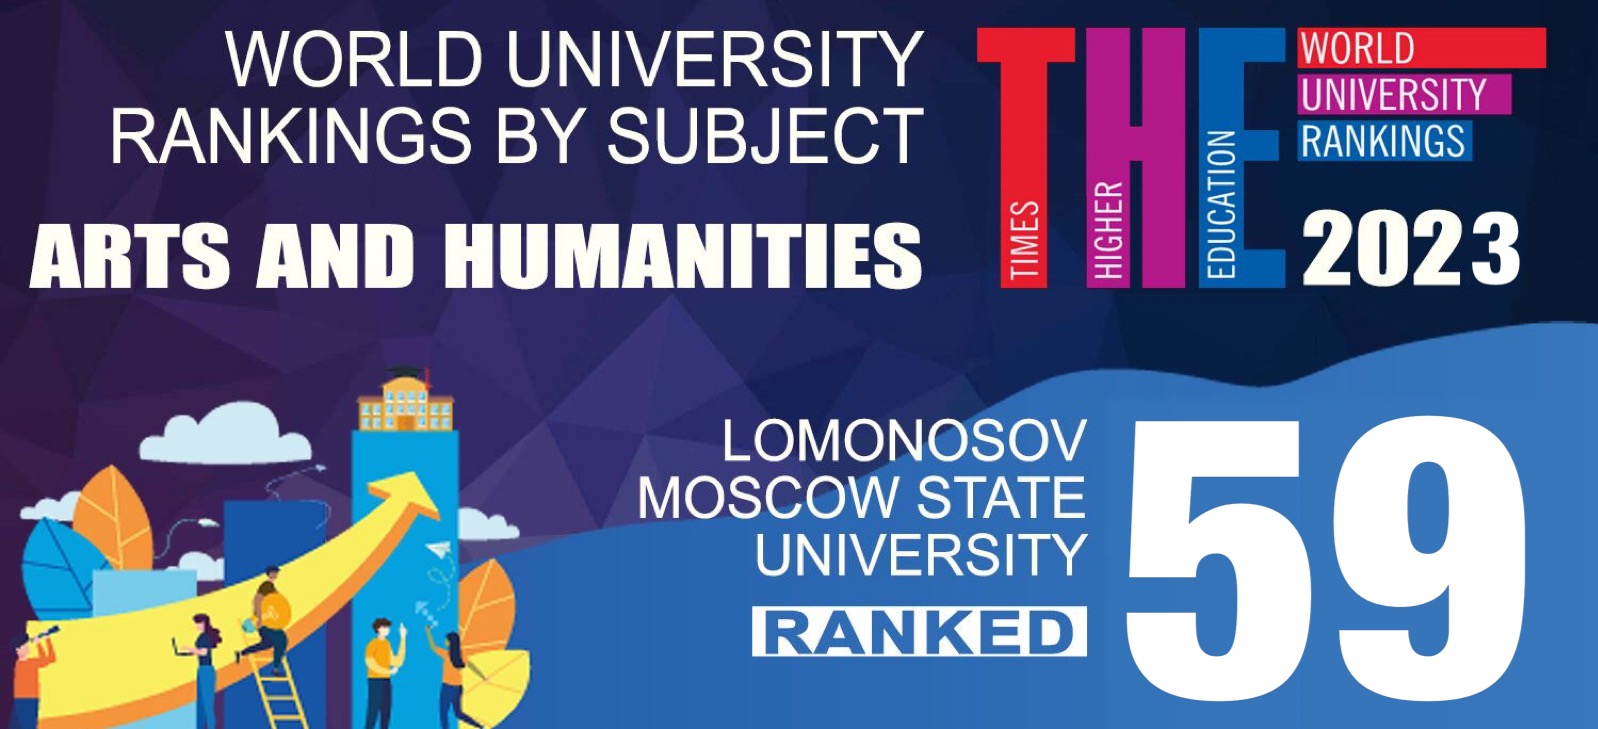 МГУ вошел в топ-100 предметного рейтинга Times Higher Education  по гуманитарным наукам и искусству